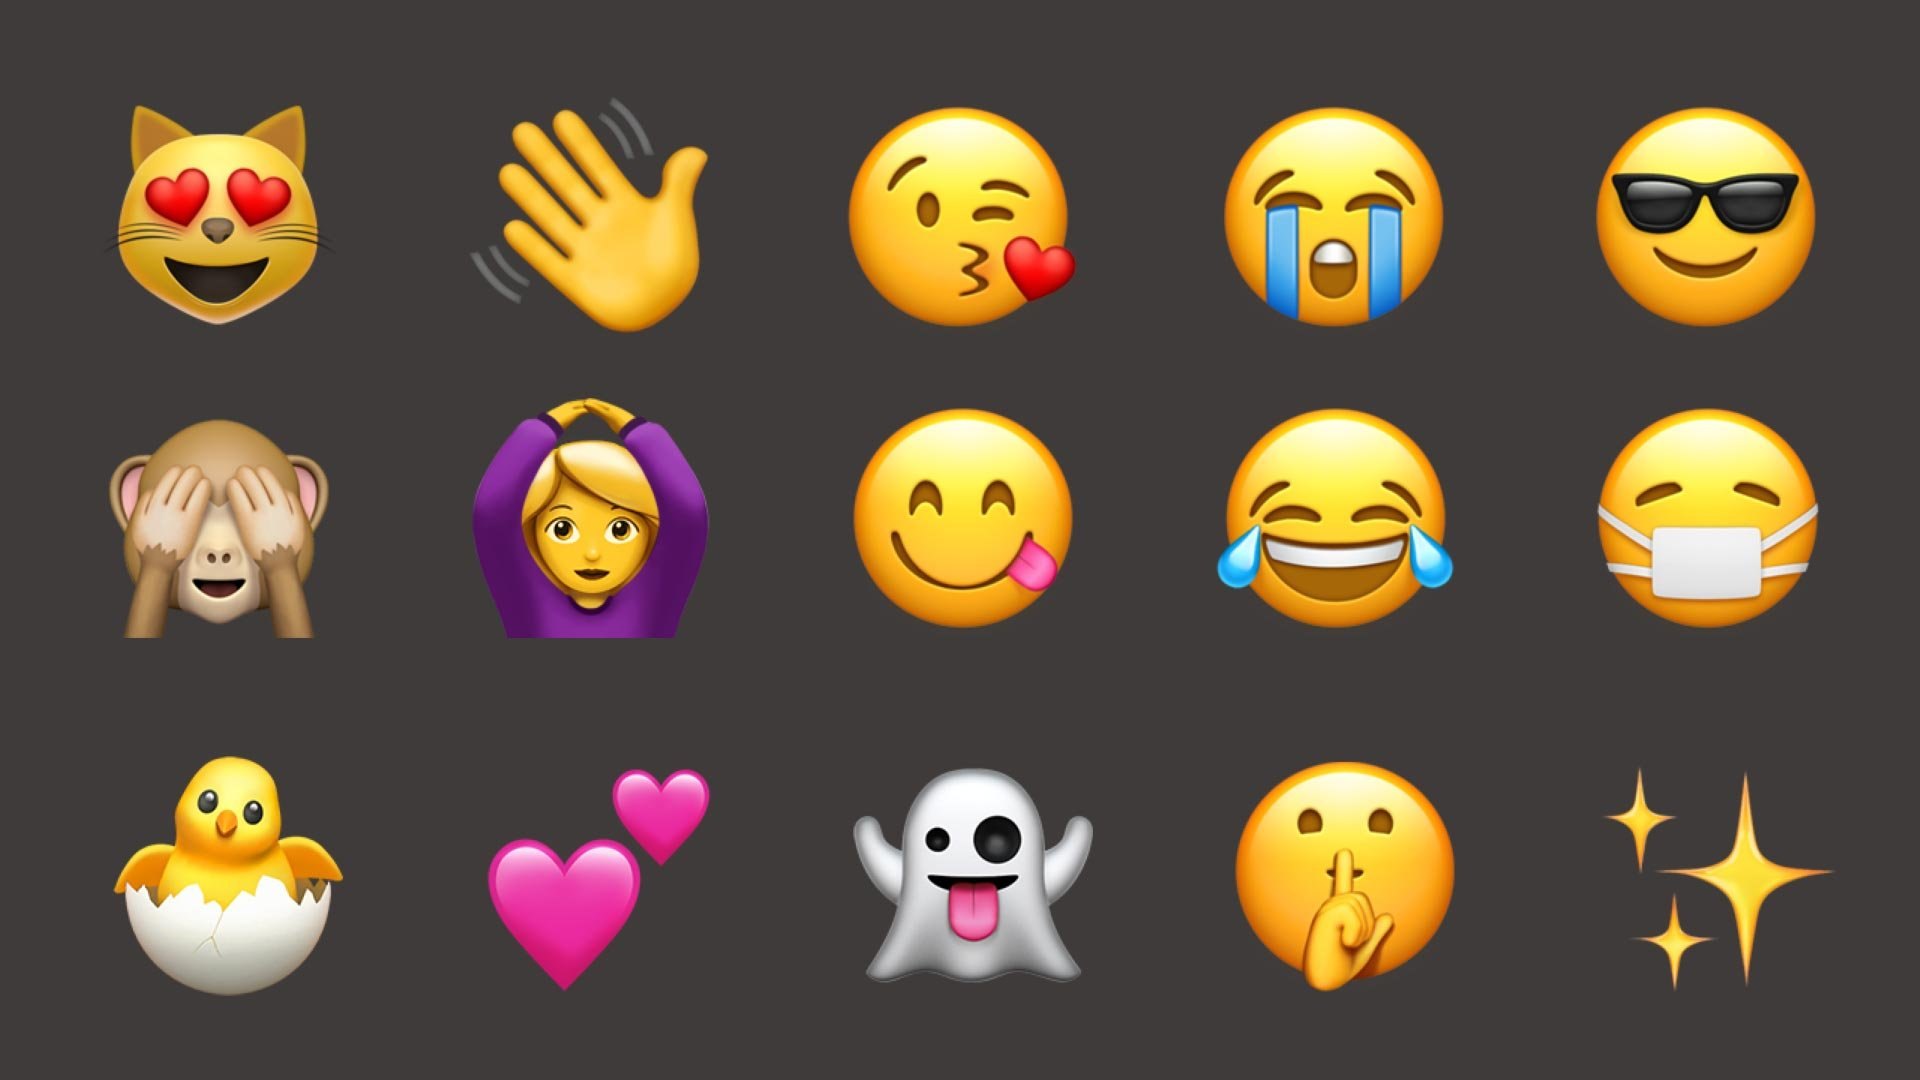 User emoji